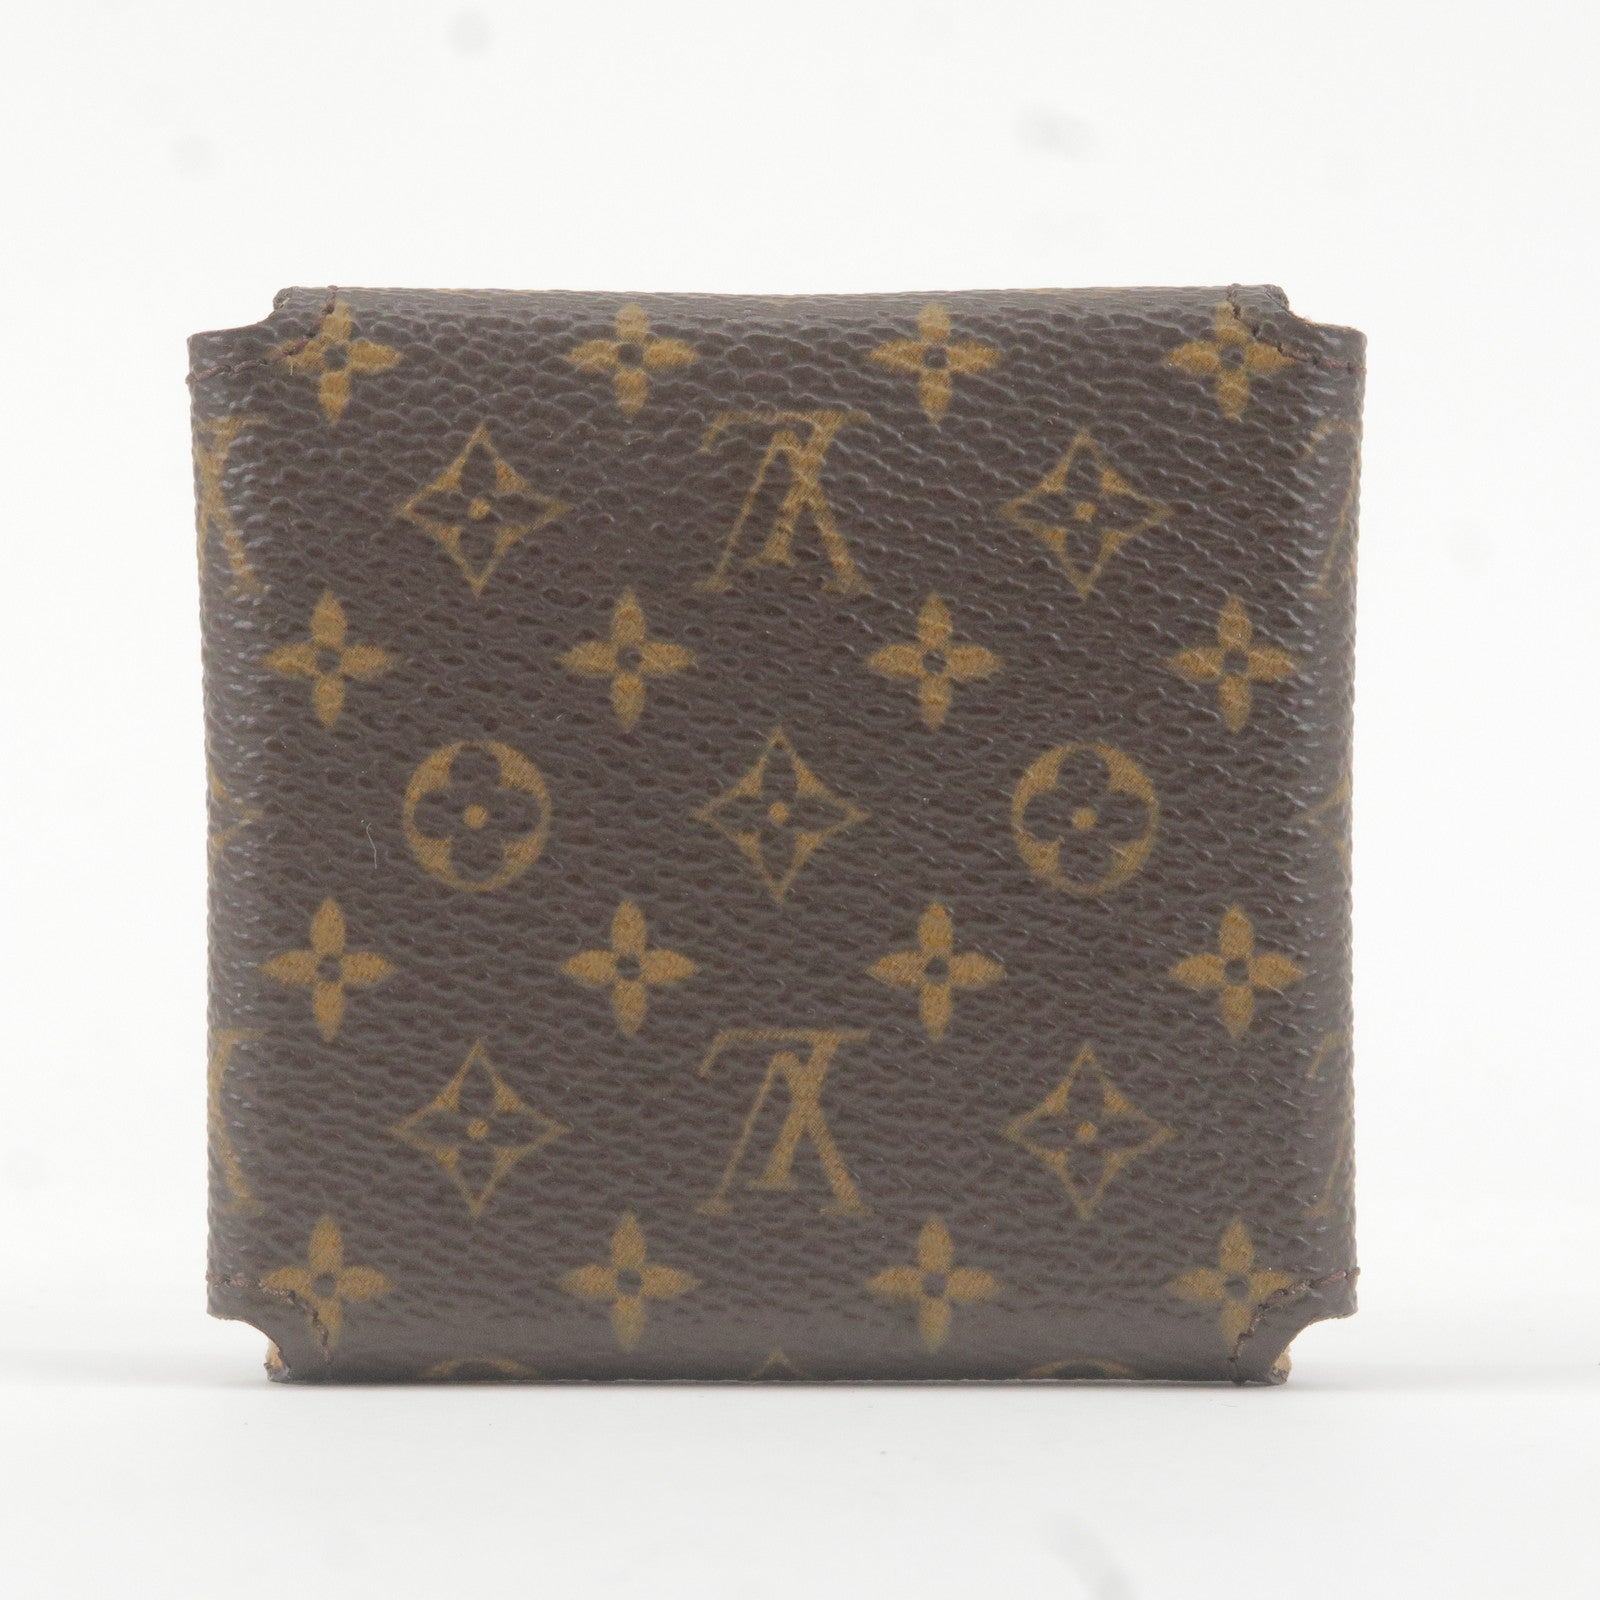 Shop second hand Louis Vuitton wallets